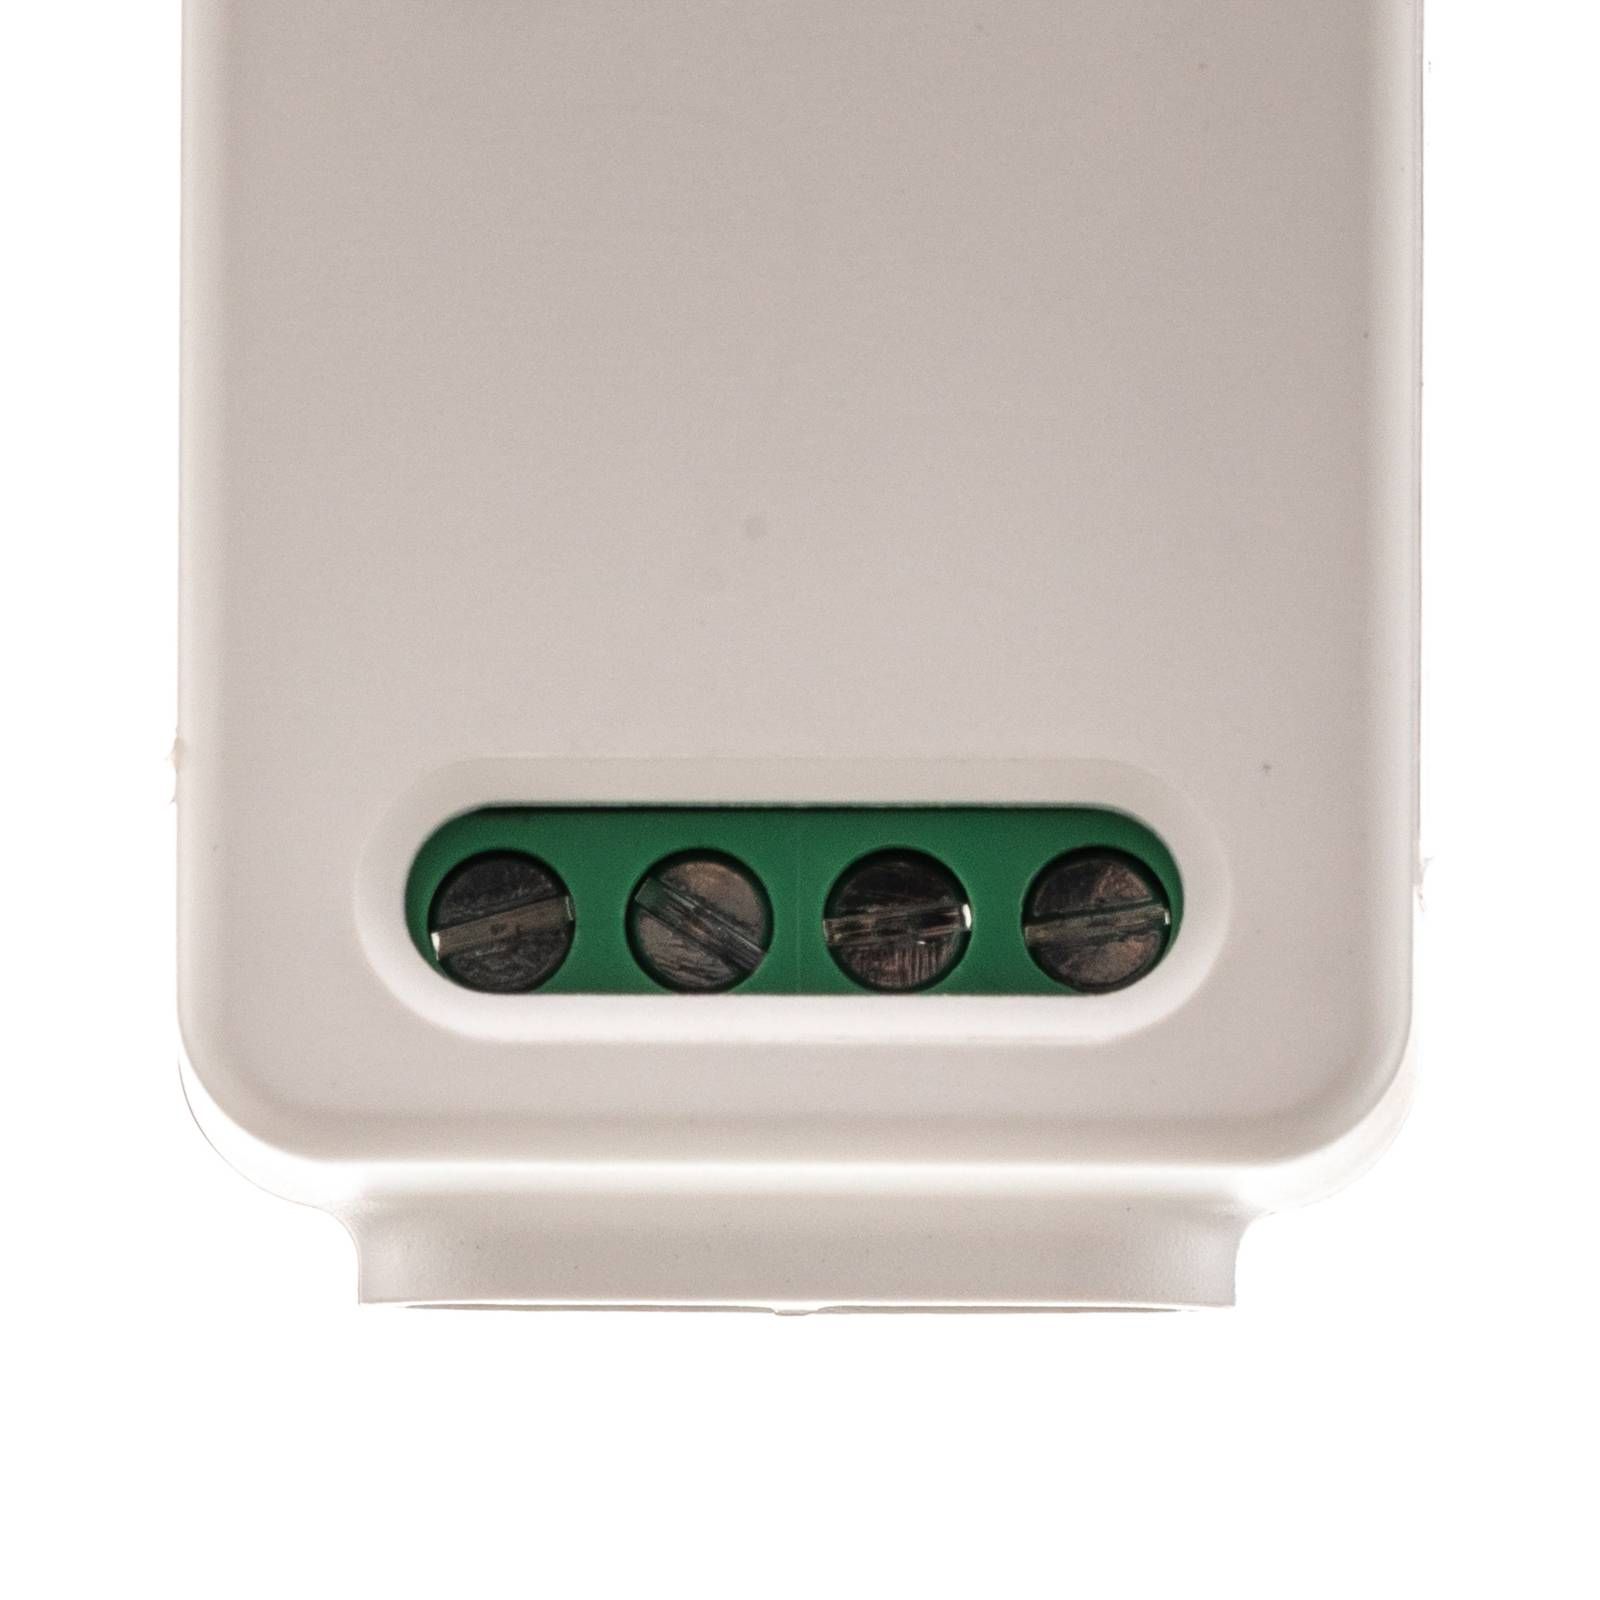 PRIOS Prios Evasko WiFi prijímač pre bezdrôtový vypínač, plast, L: 3.2 cm, K: 6.4cm